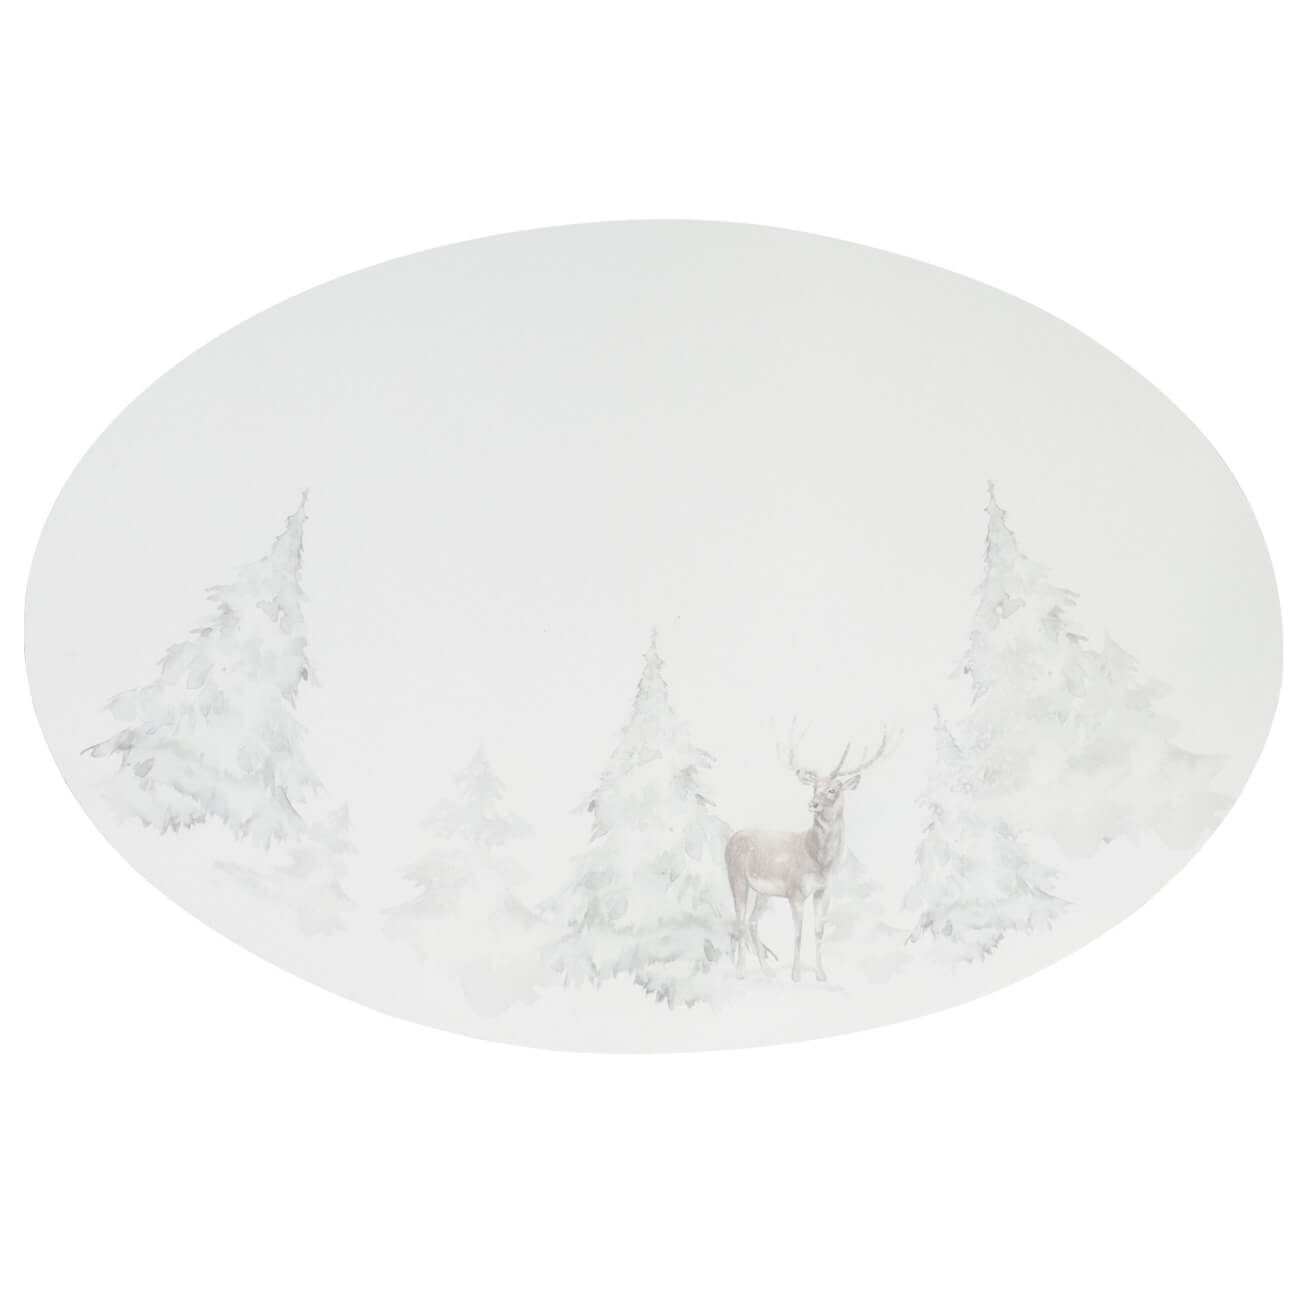 Салфетка под приборы, 30х45 см, ПВХ, овальная, белая, Олень в снежном лесу, Rock print изображение № 1